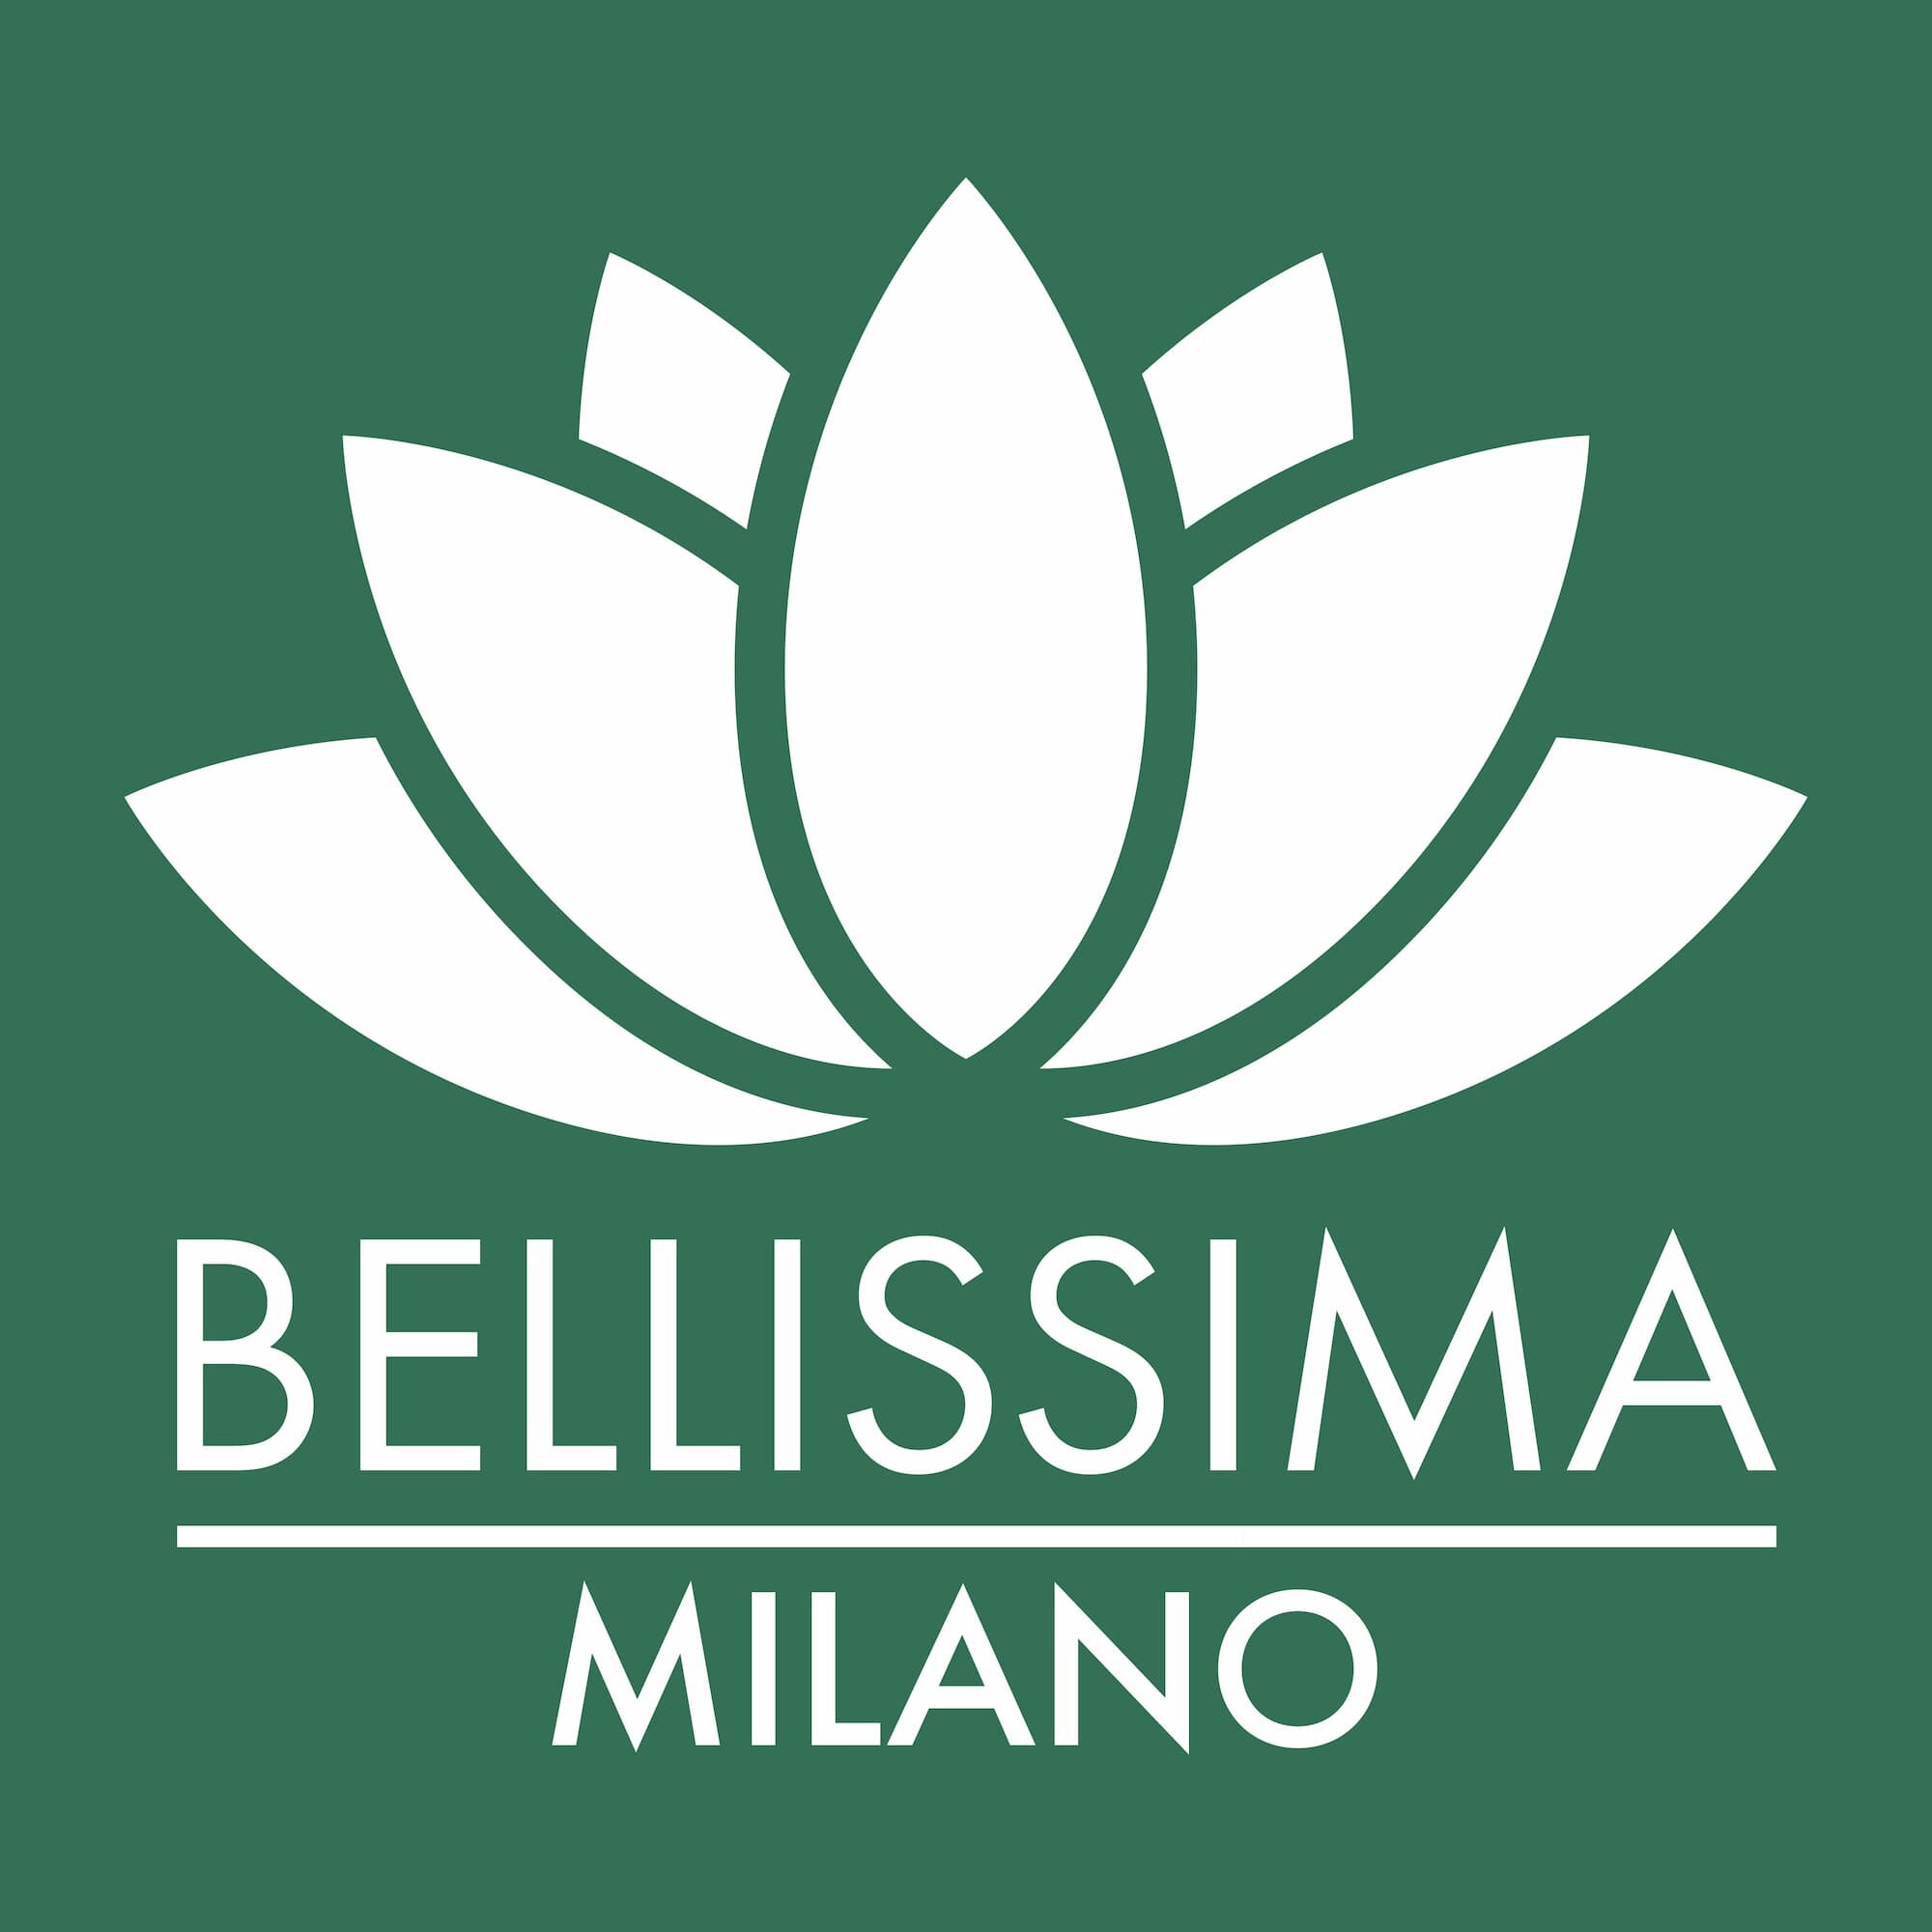 Progettazione_Logo_BellissimaMilano-02 (1).jpg